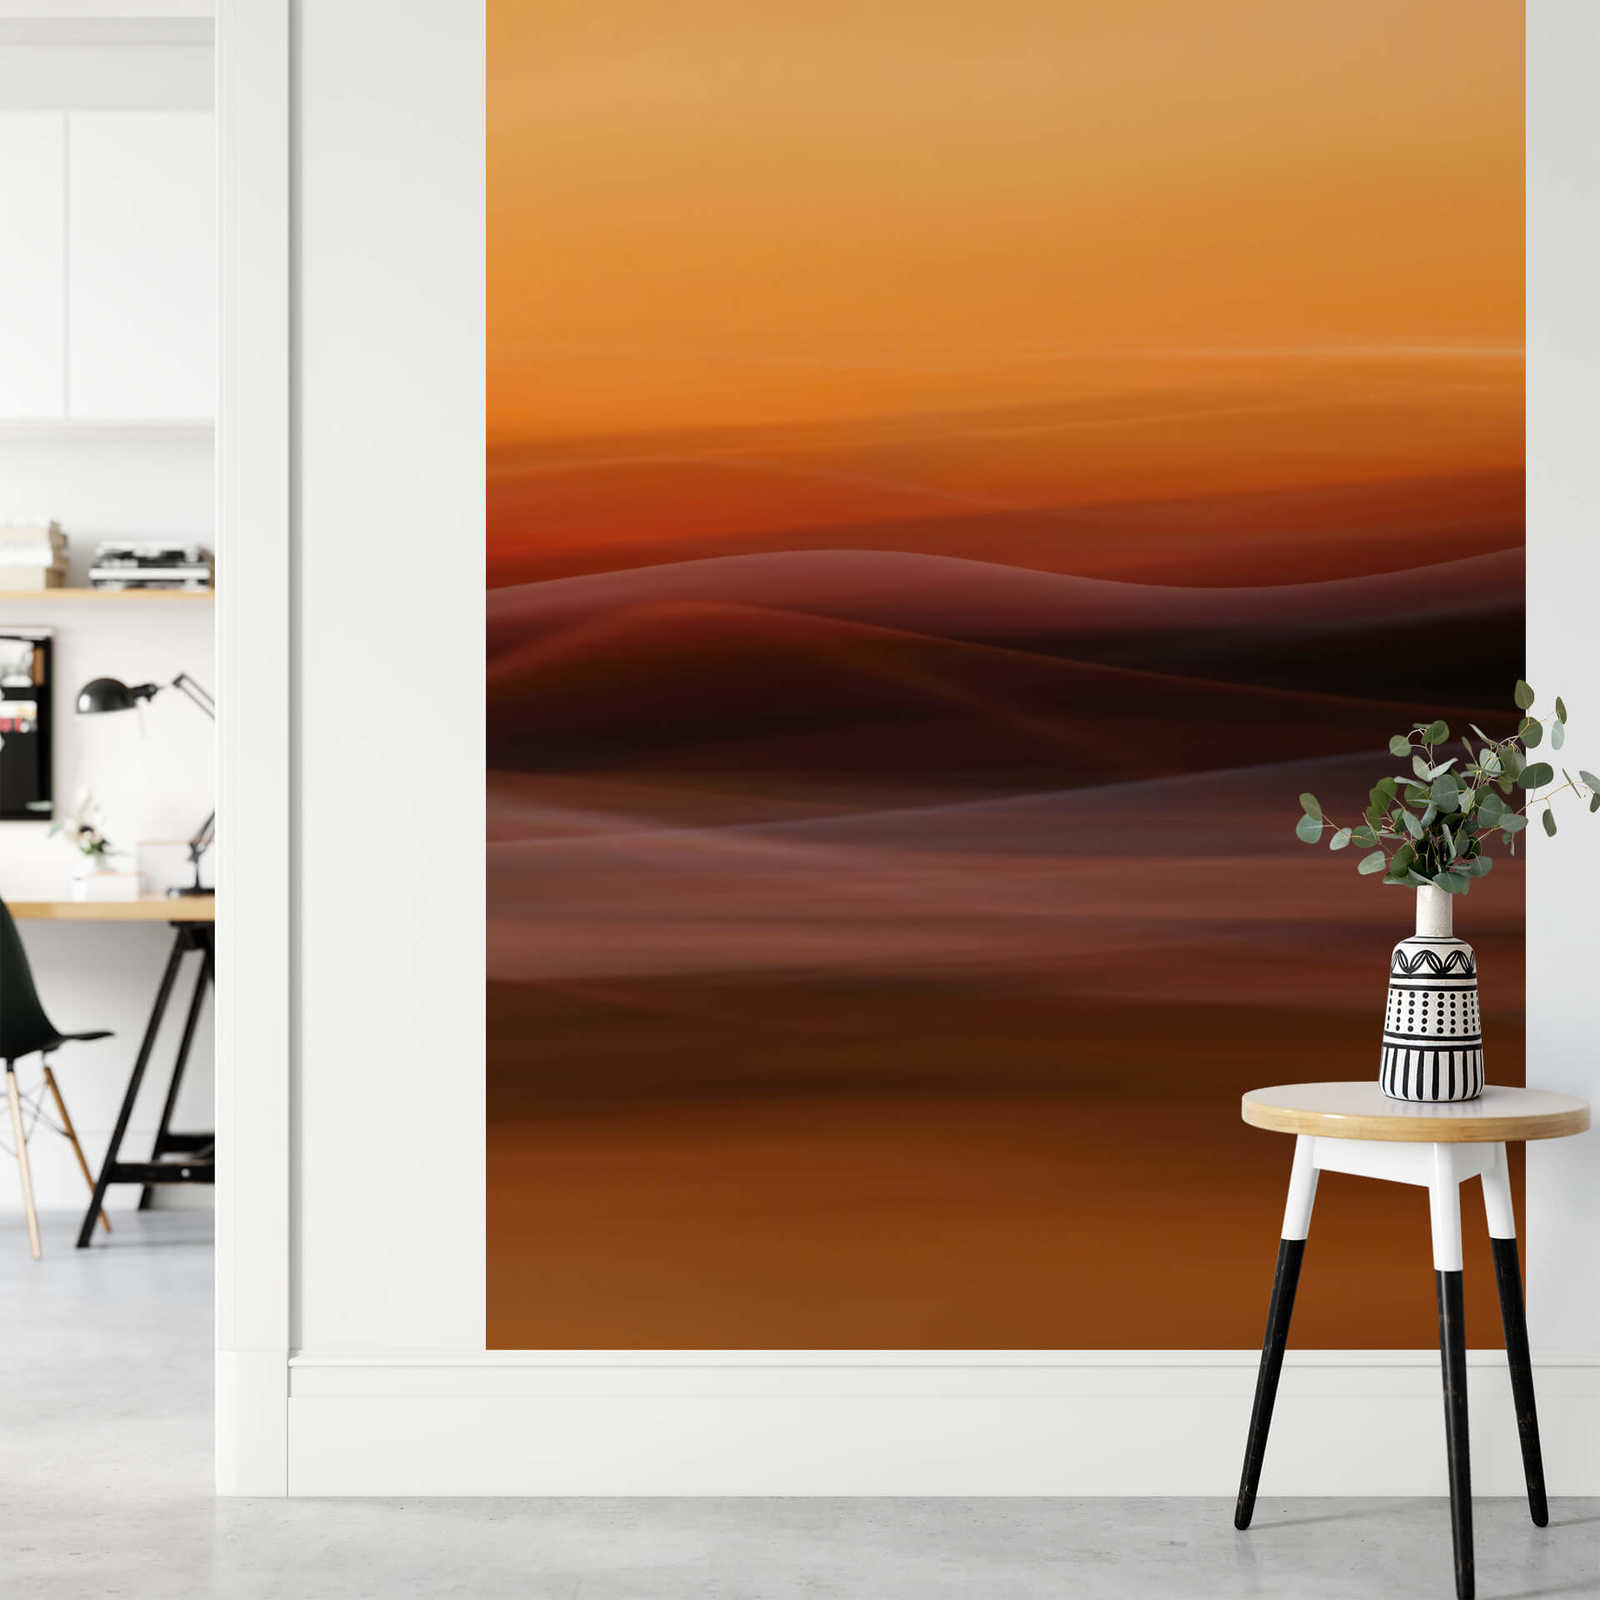             Abstrakte Fototapete Nebel Motiv – Orange, Gelb, Rot
        